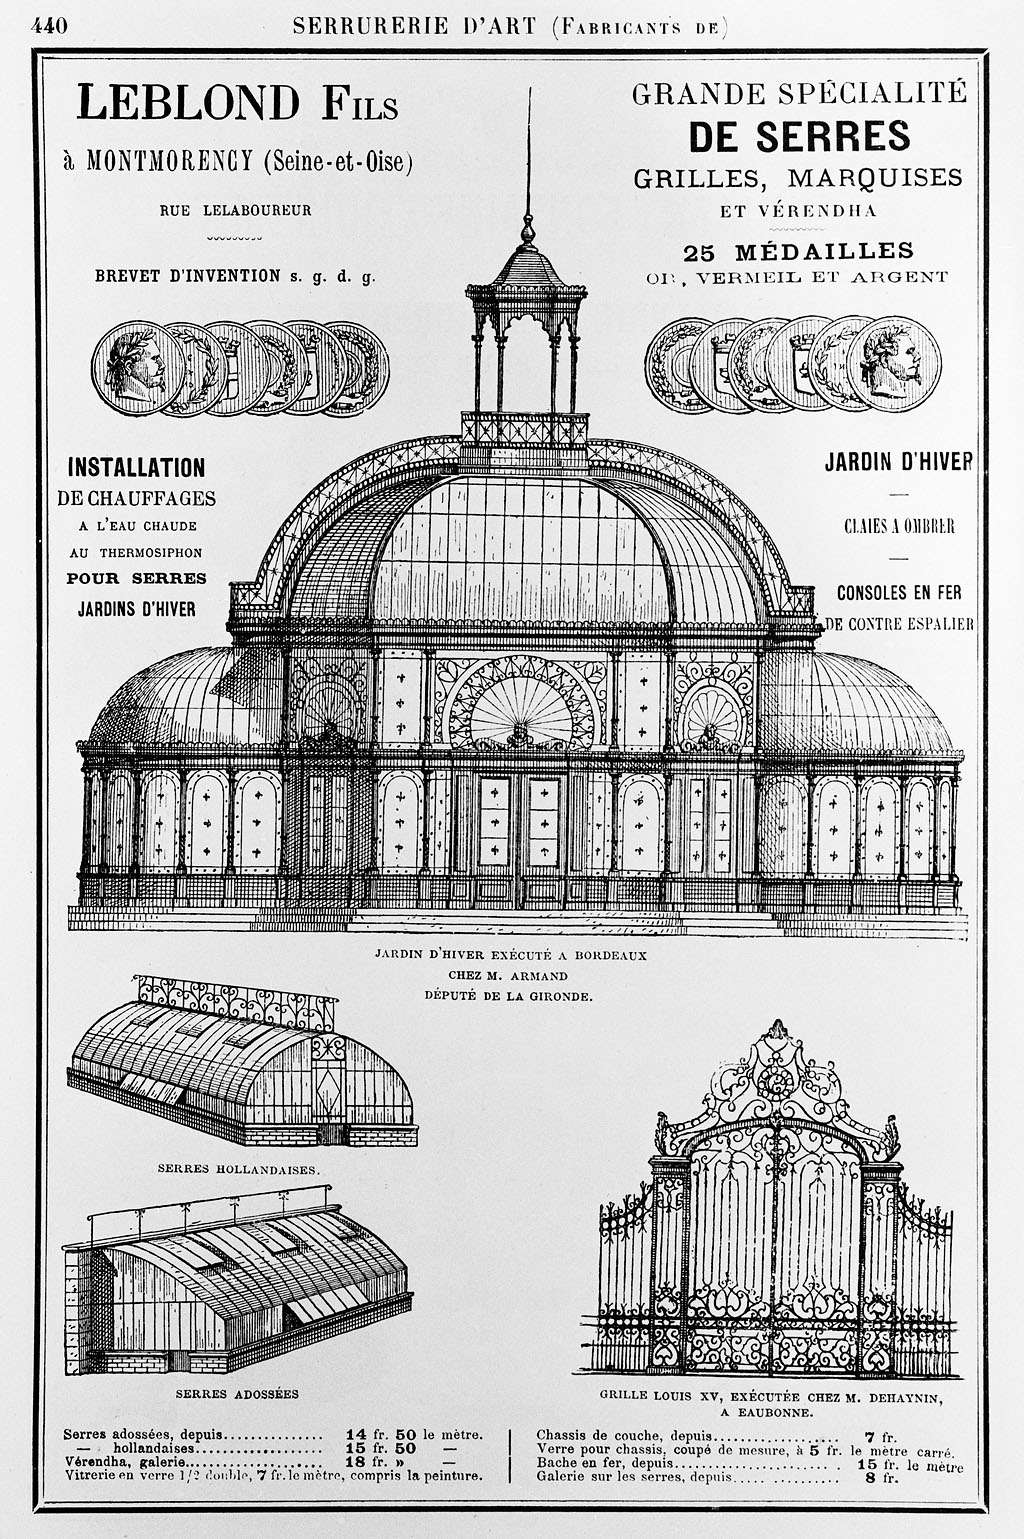 Jardin d'hiver, serres et grille : publicité sur catalogue Leblond et fils, fabricant de serrurerie d'art, vers 1900.